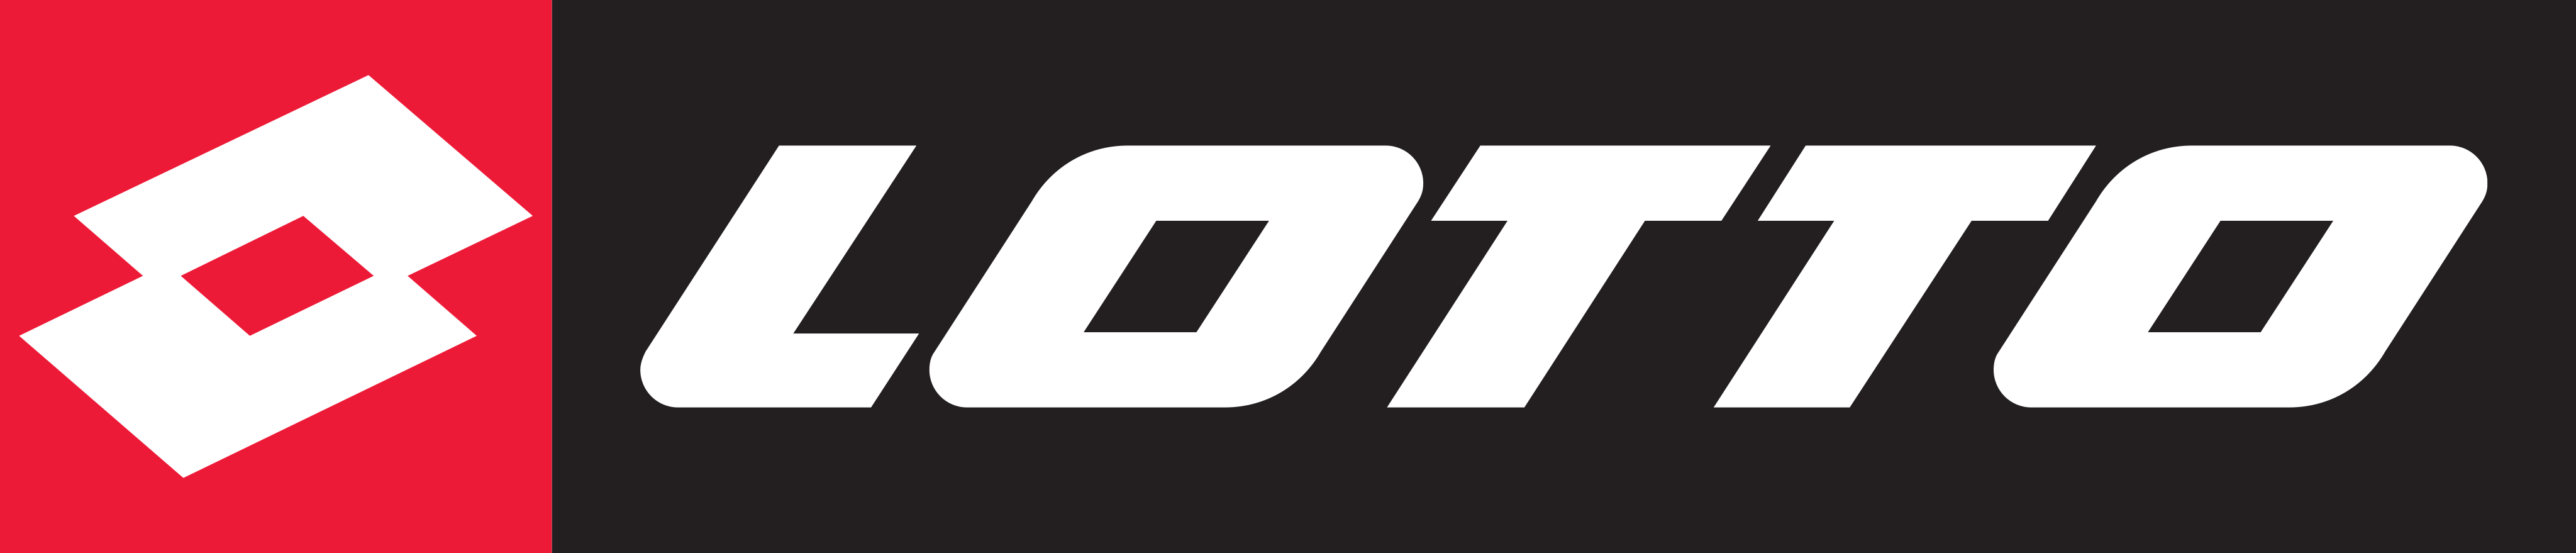 lotto logo 2 - Lotto Logo